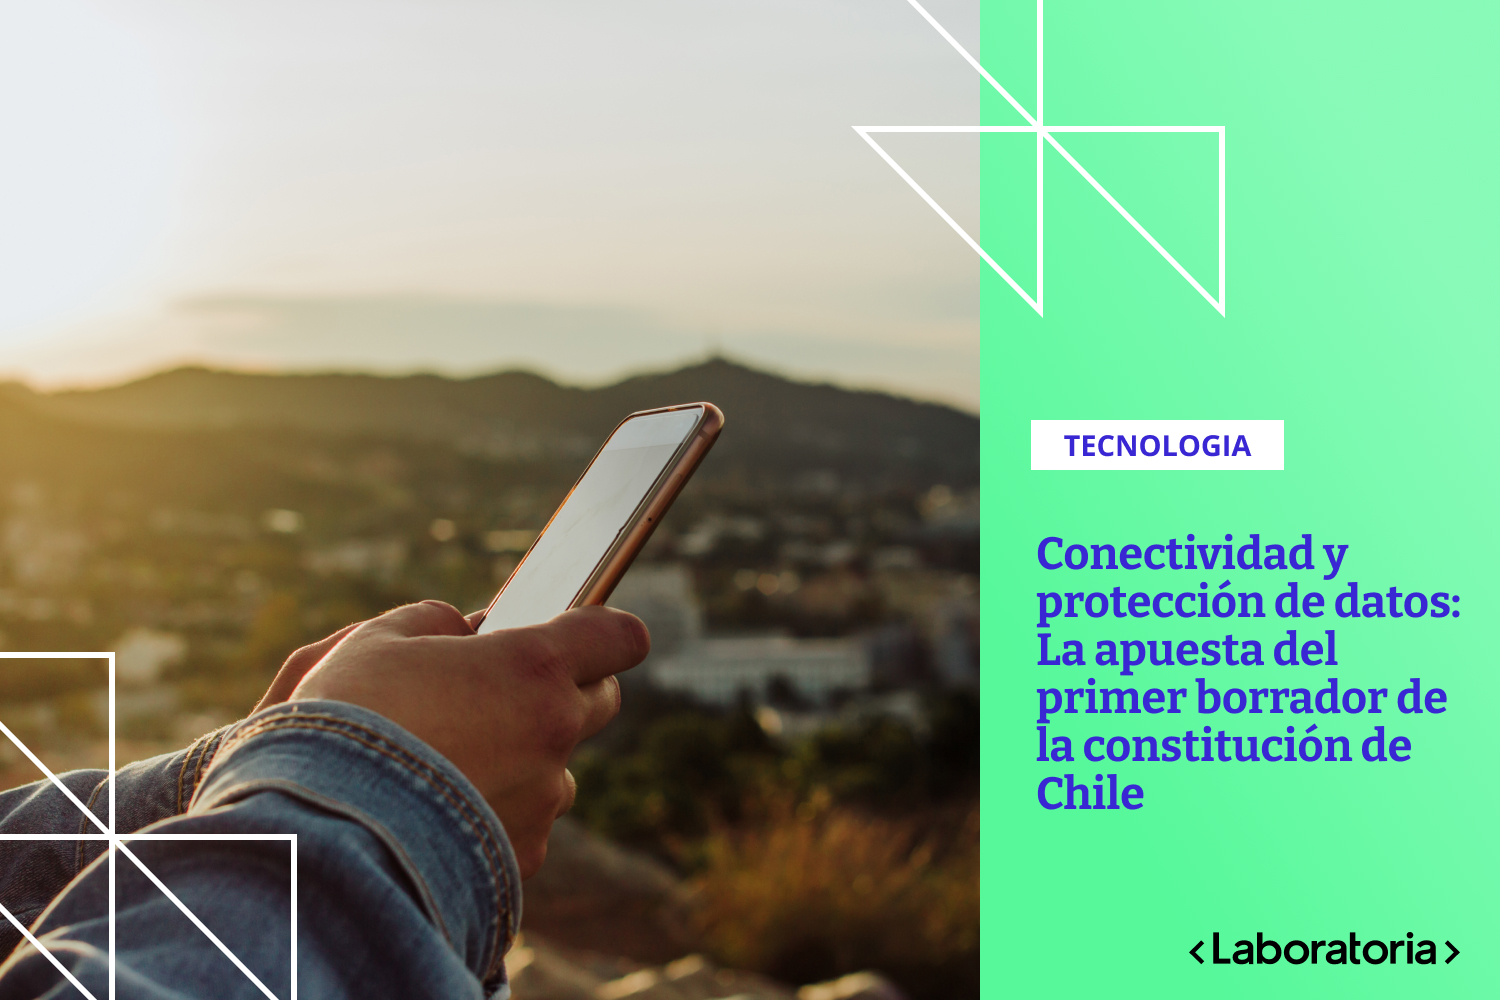 Compartimos algunos alcances sobre la conectividad y protección de datos en el más reciente borrador de la nueva constitución de Chile.